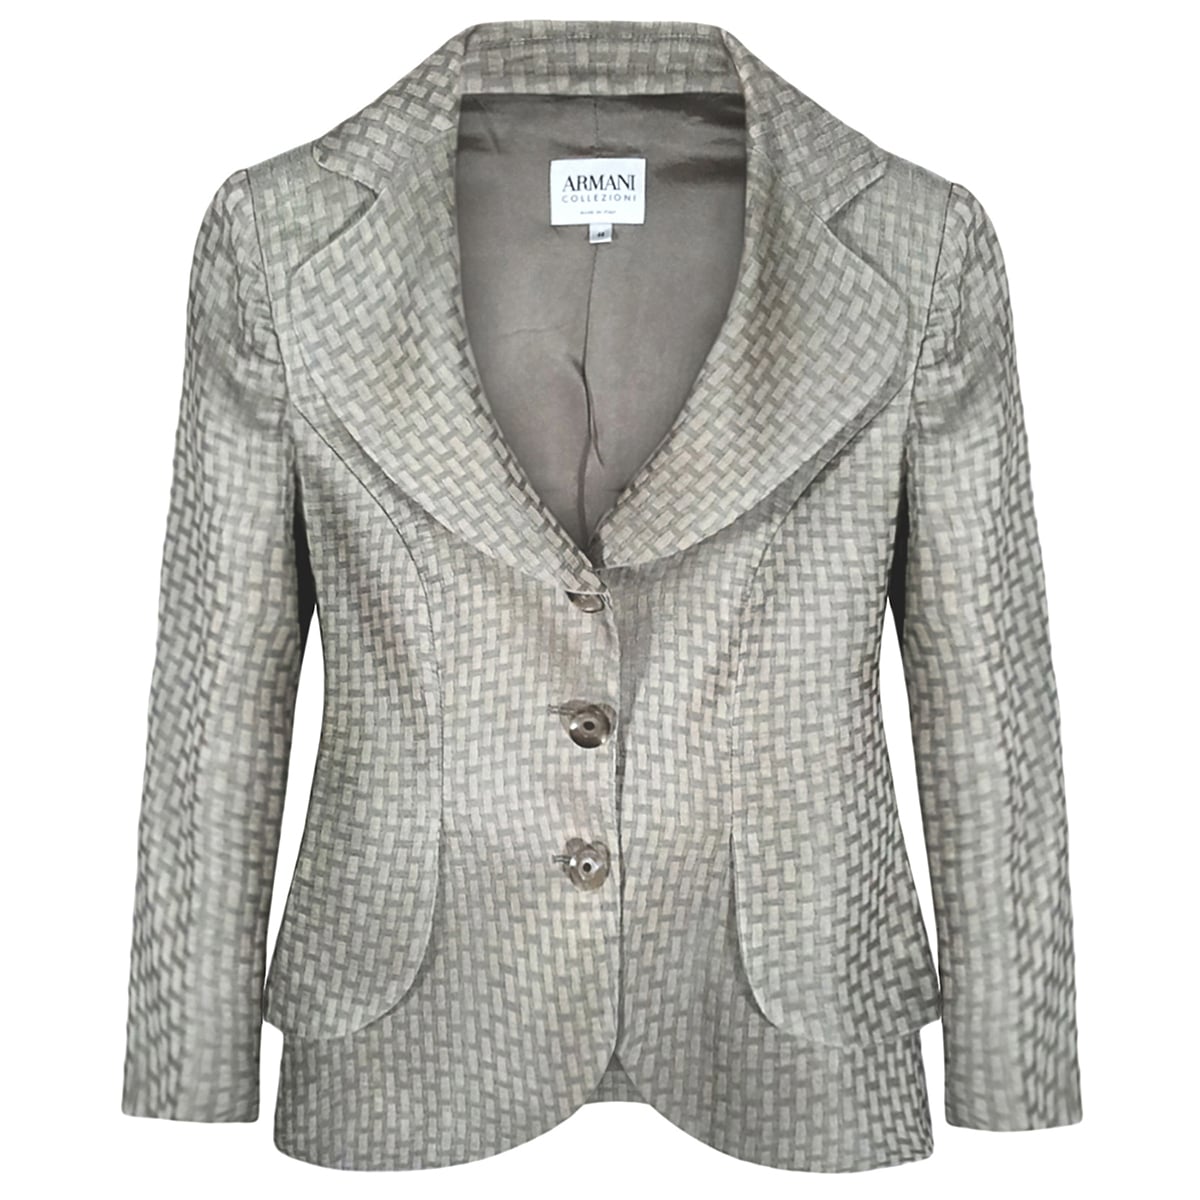 armani collezioni women's blazer